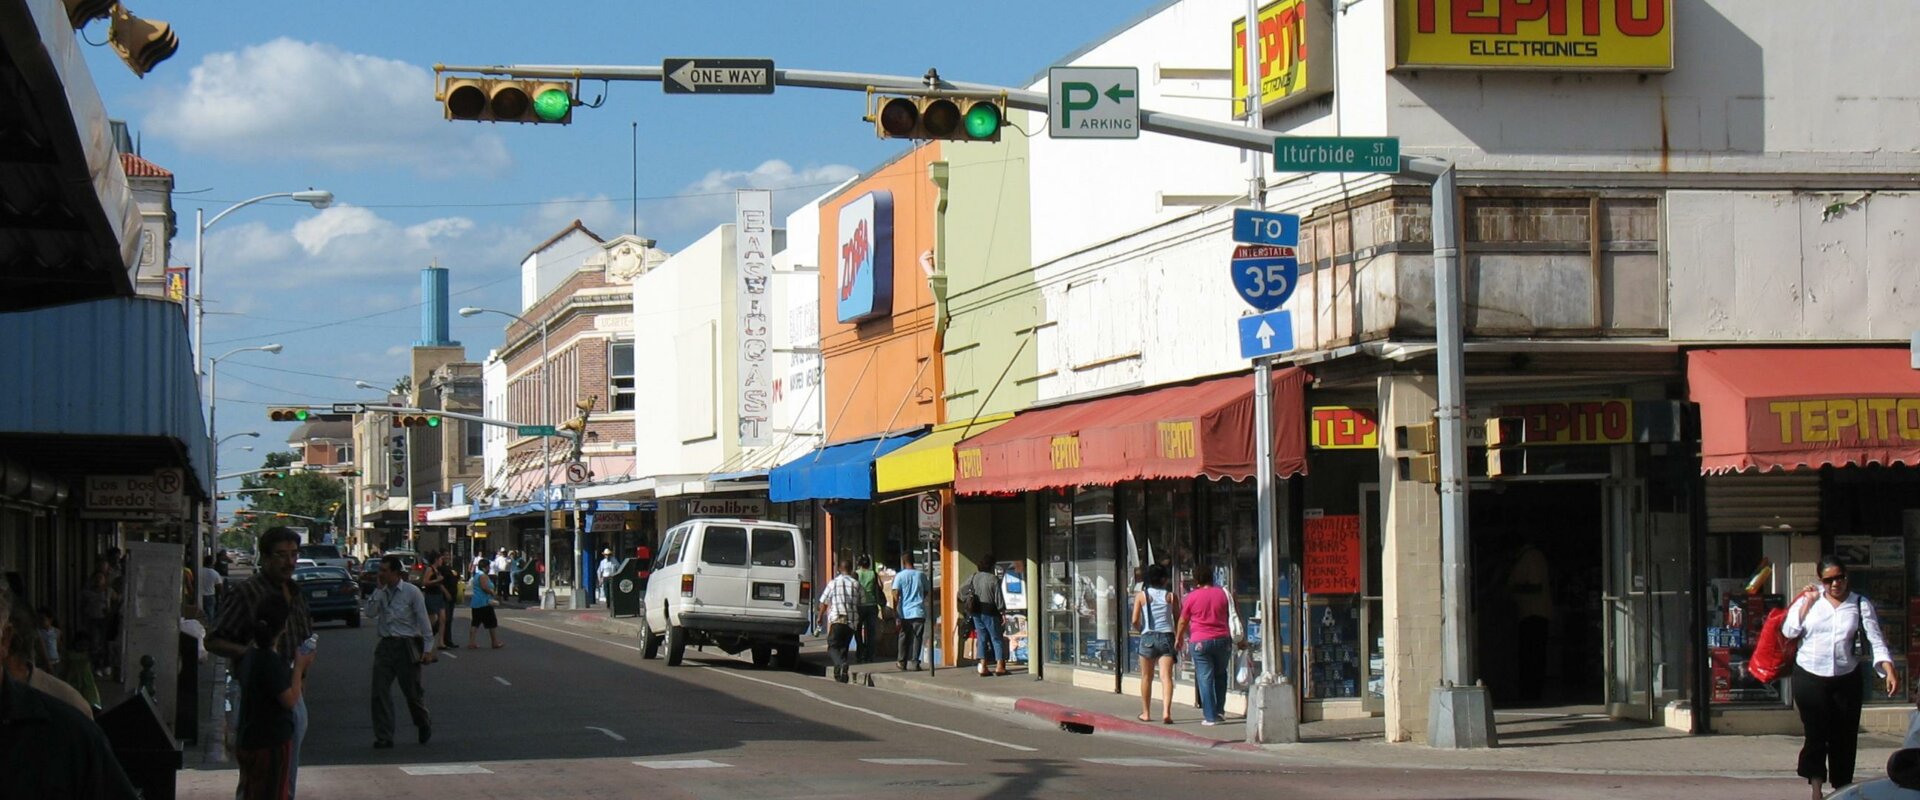 Laredo-TX-note-buyers